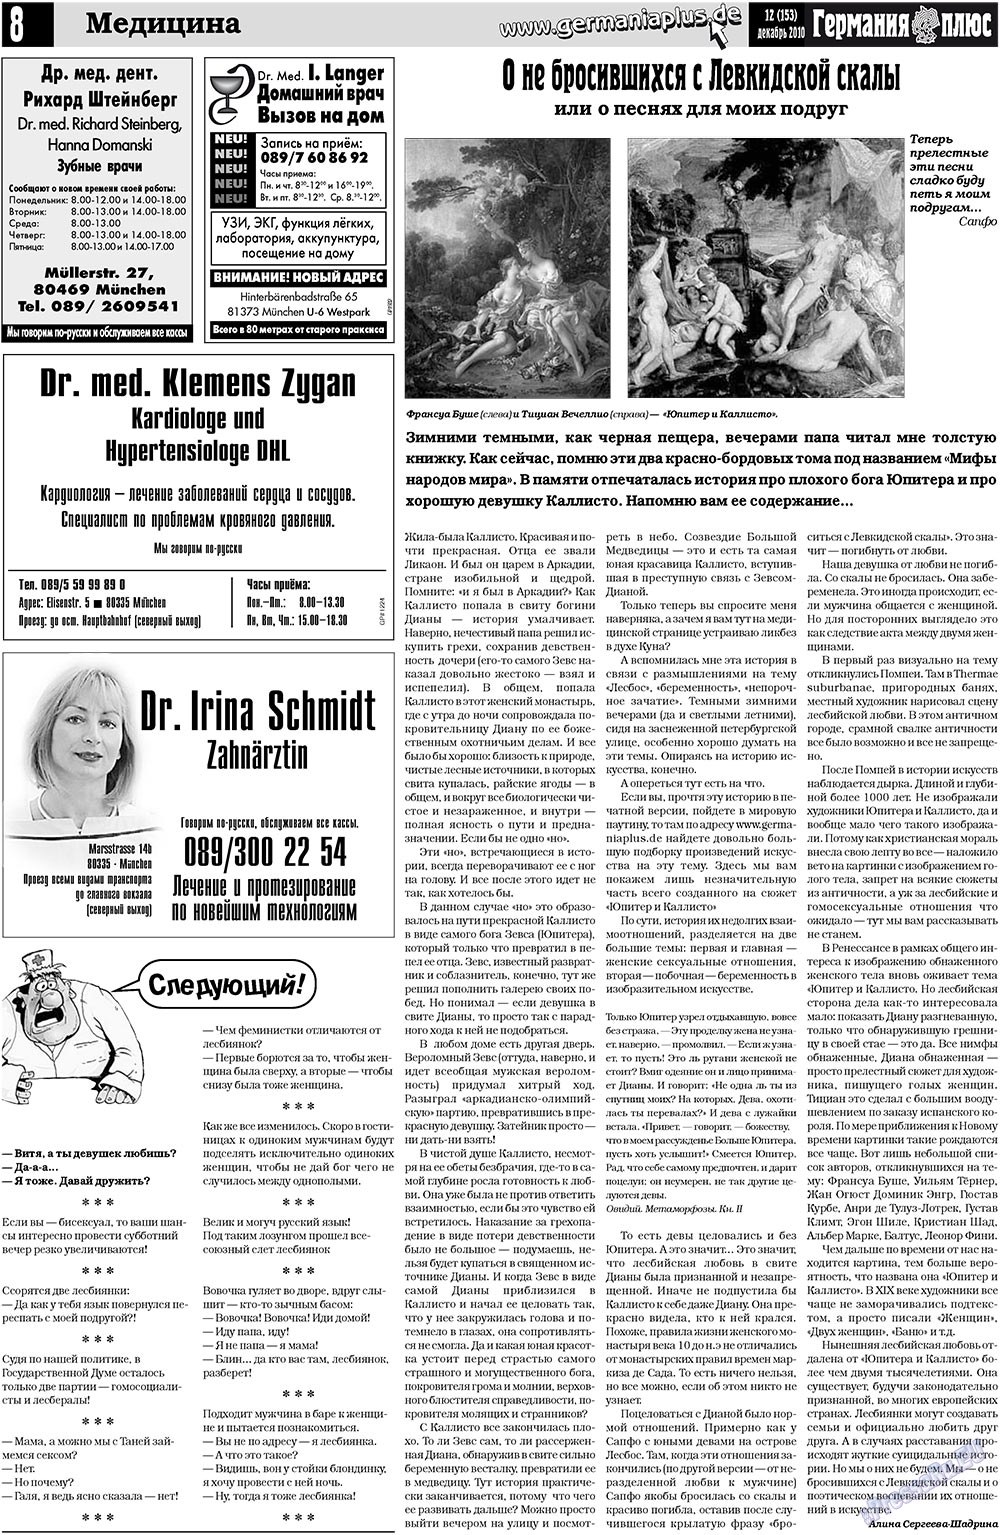 Германия плюс (газета). 2010 год, номер 12, стр. 8